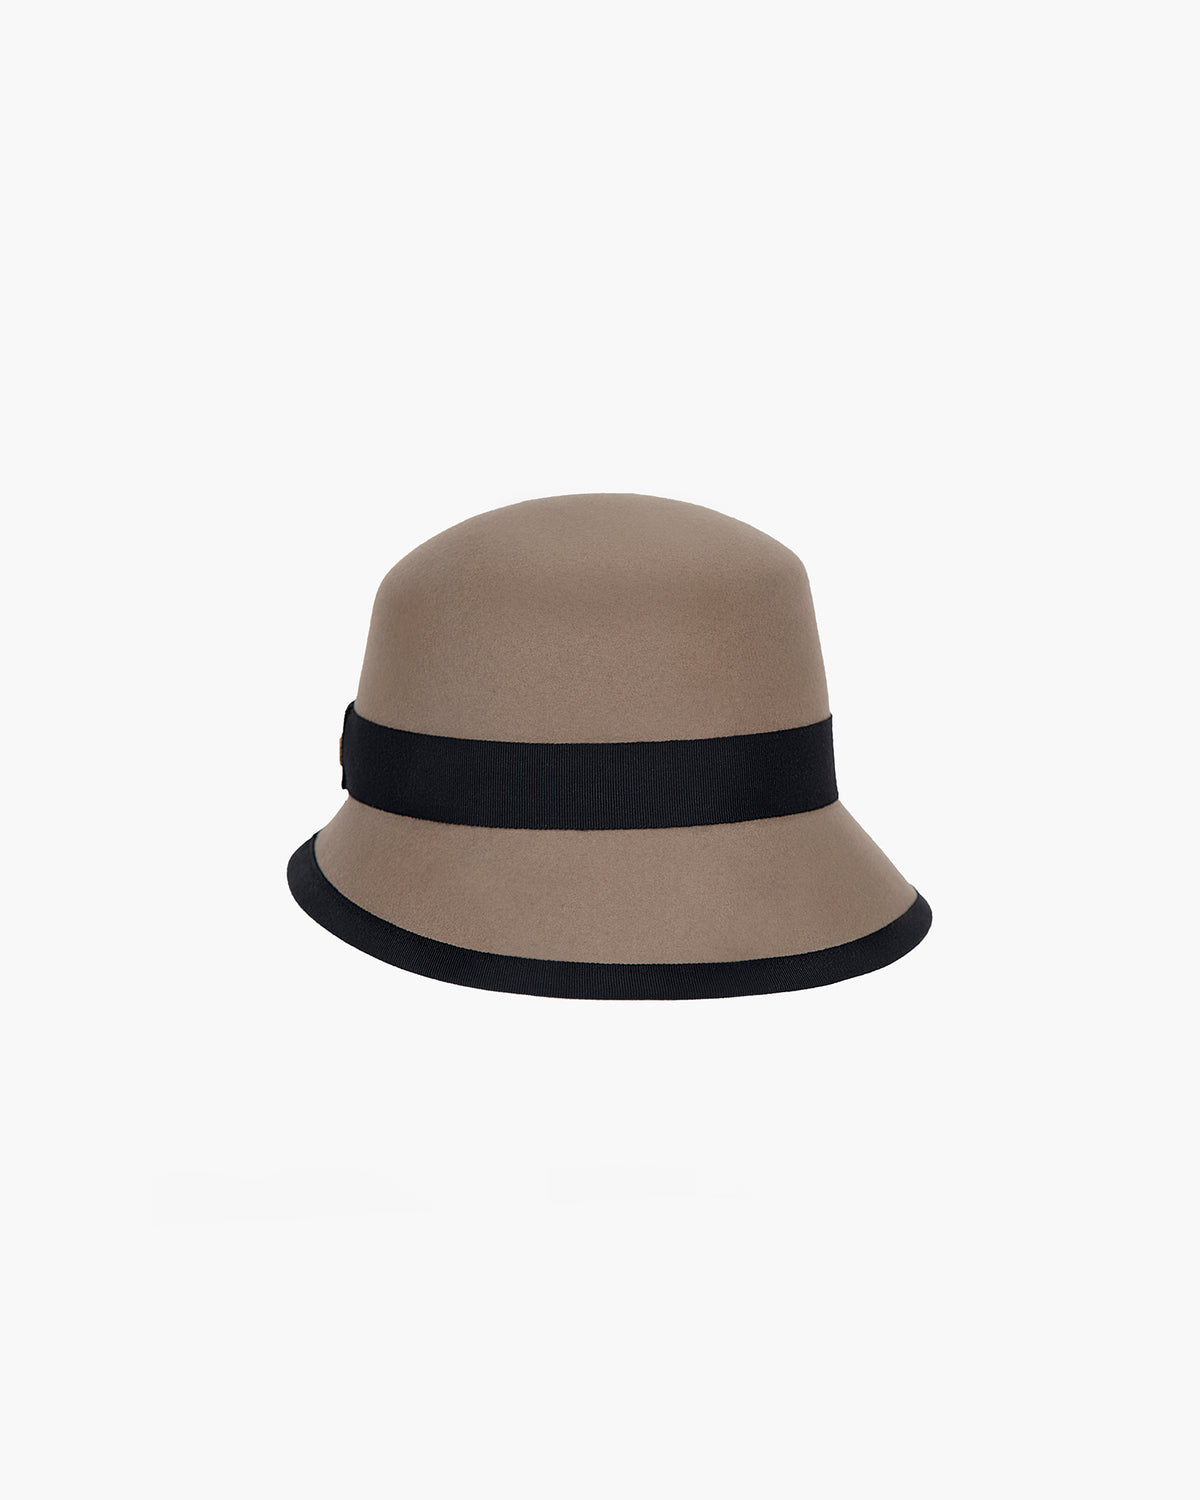 CHGBMOK Clearance Women Fashion Casua Hat Autumn And Winter Warm Hat Basin  Cap Bow Hat 